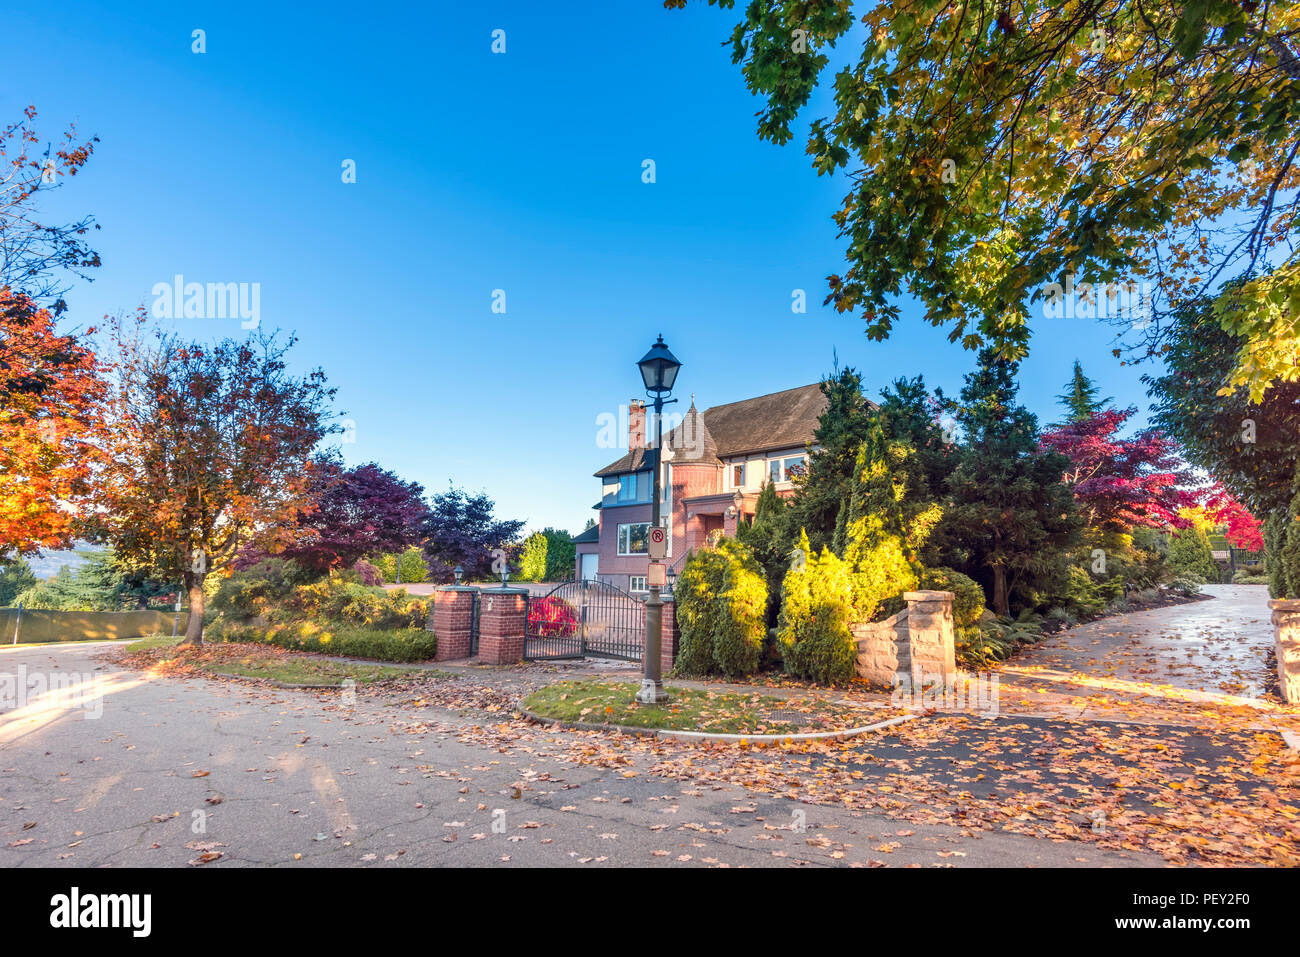 Strada asfaltata in autunno street con alberi e foglie cadute, privato casa residenziale, recinto verde da piante, cancelli, cielo blu Foto Stock